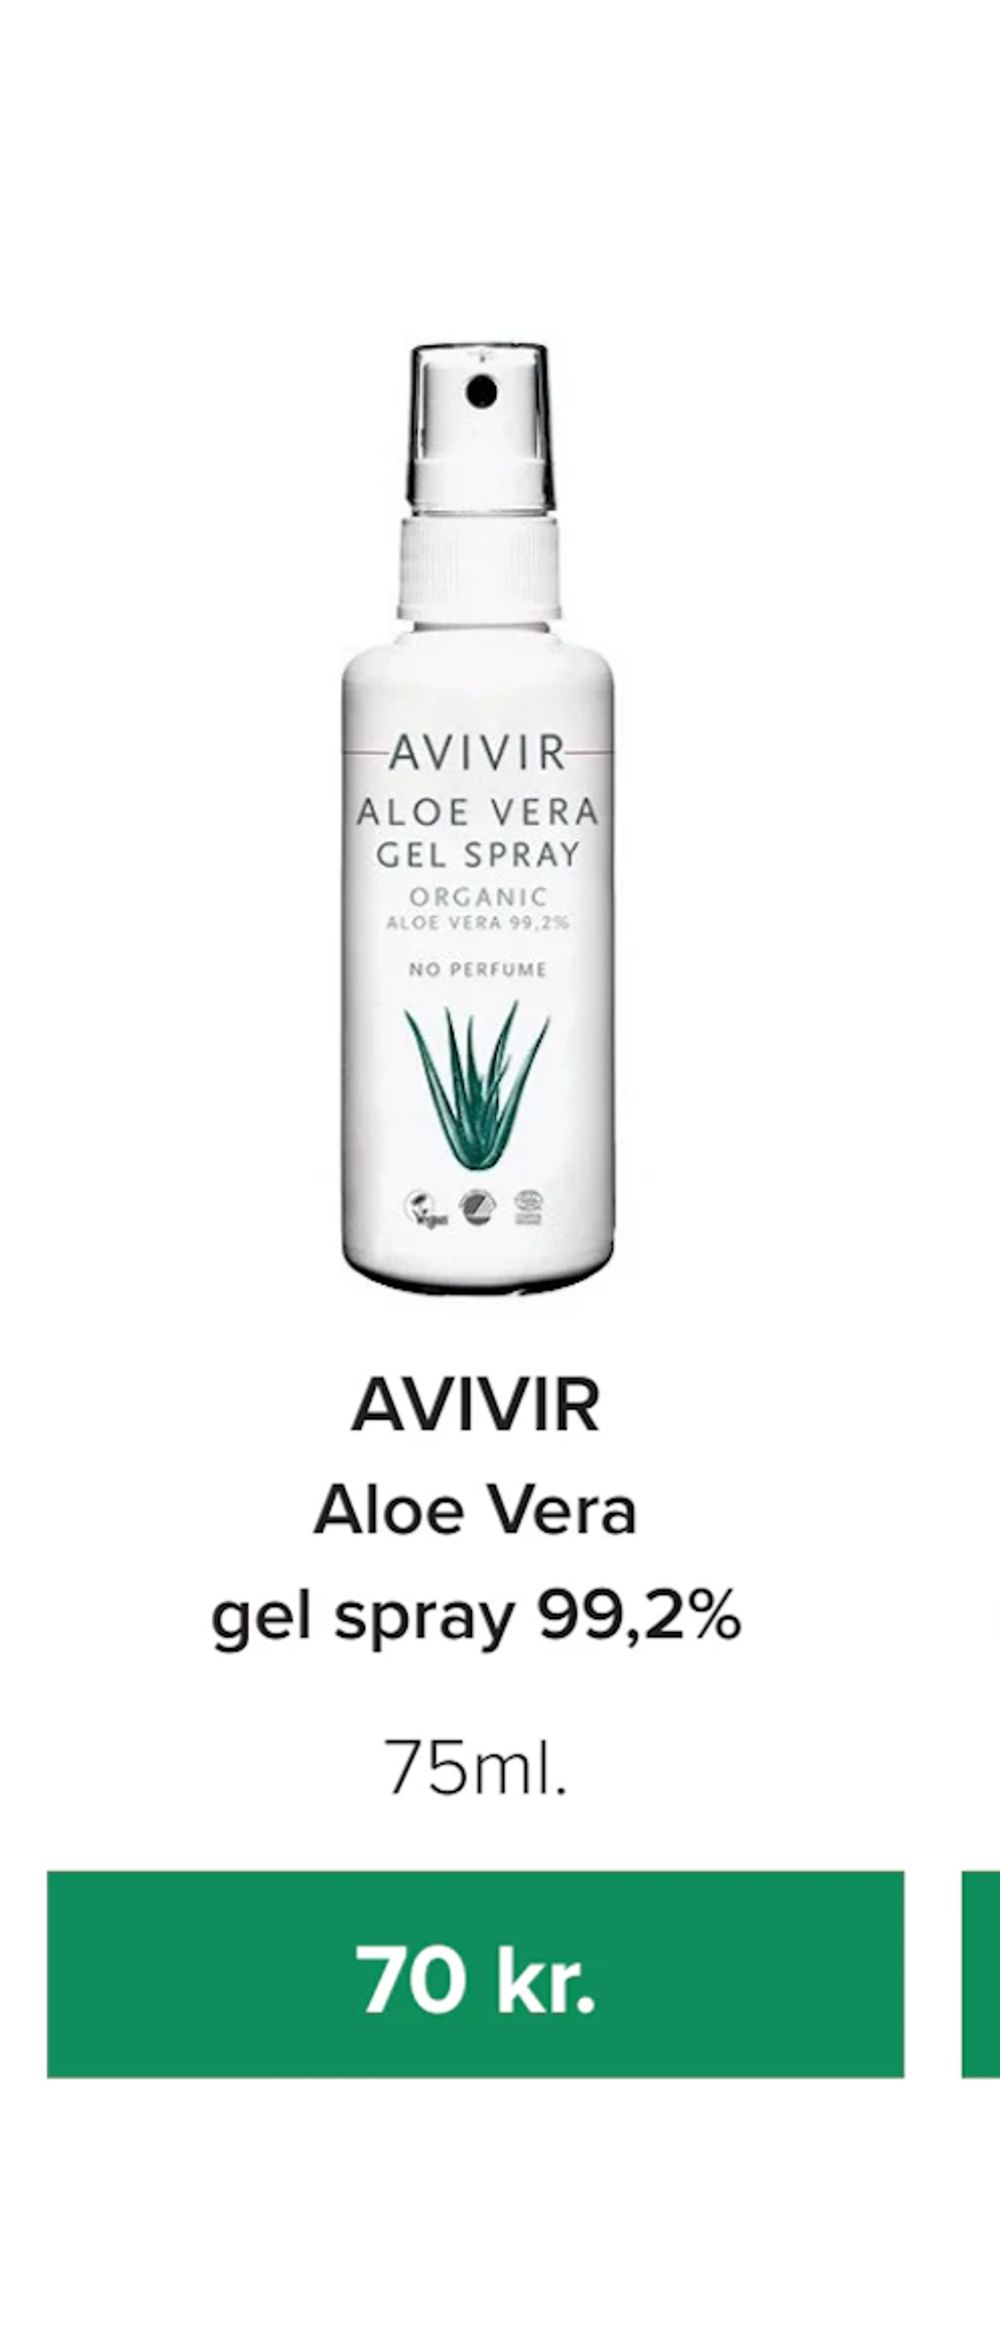 Tilbud på Aloe Vera gel spray 99,2% fra Helsemin til 70 kr.